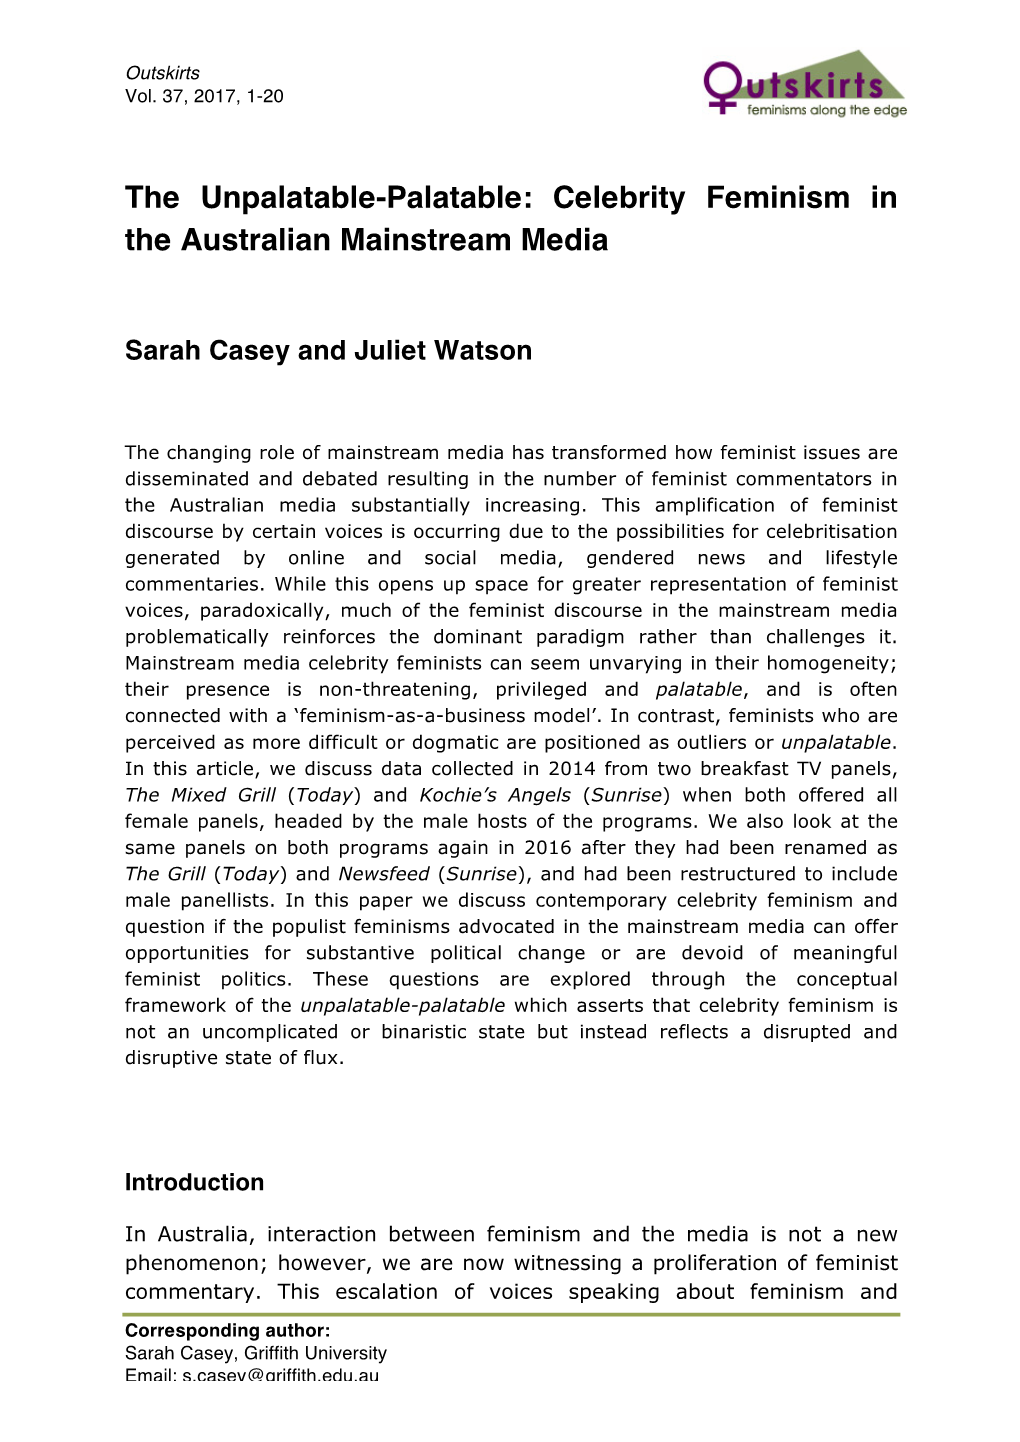 Celebrity Feminism in the Australian Mainstream Media